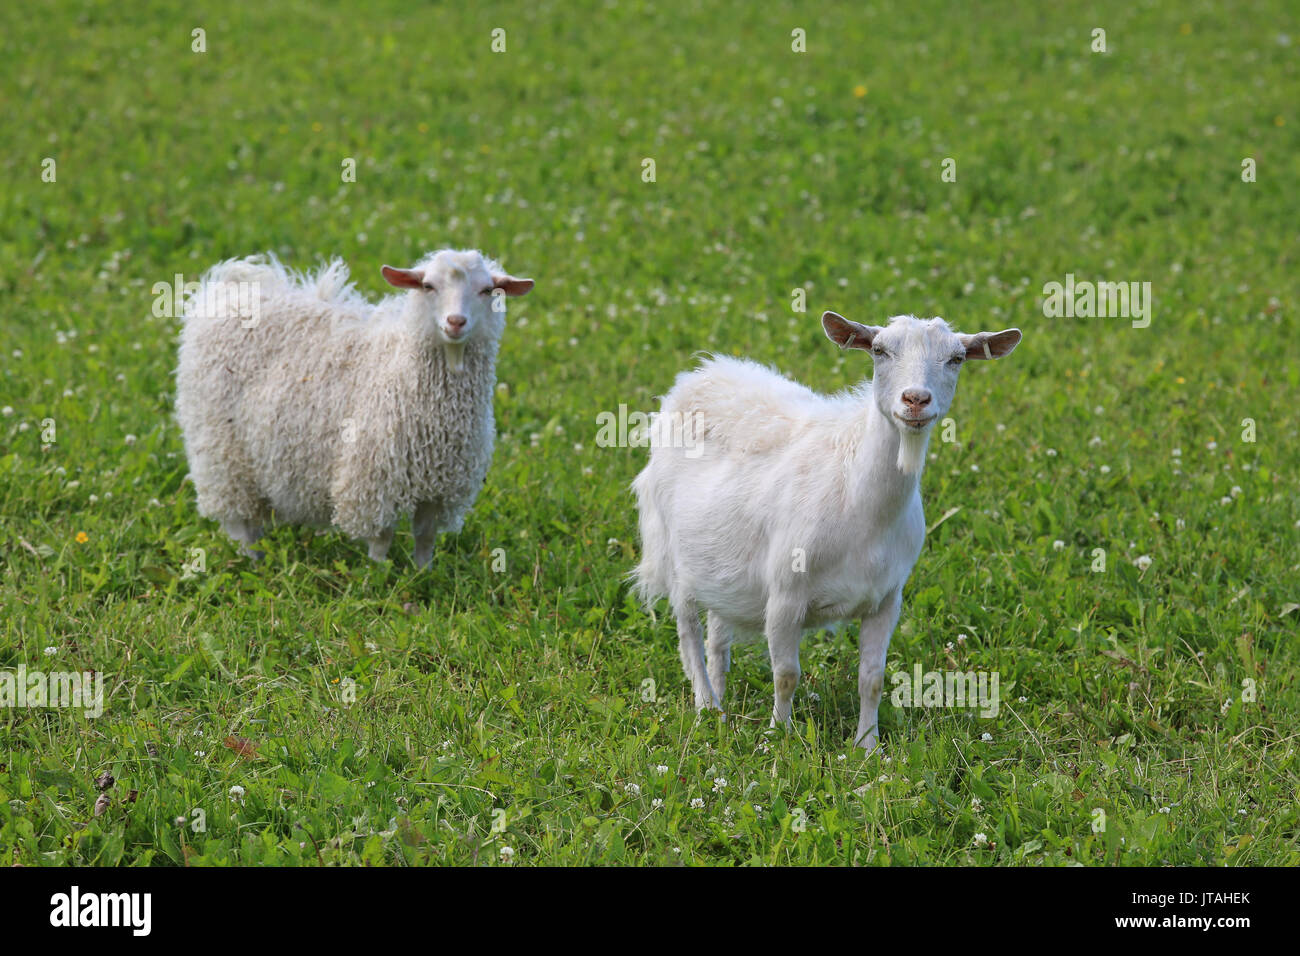 Zwei neugierige weiße Ziegen auf der grünen Wiese Wiese, konzentrieren sich auf das Tier auf der rechten Seite. Stockfoto